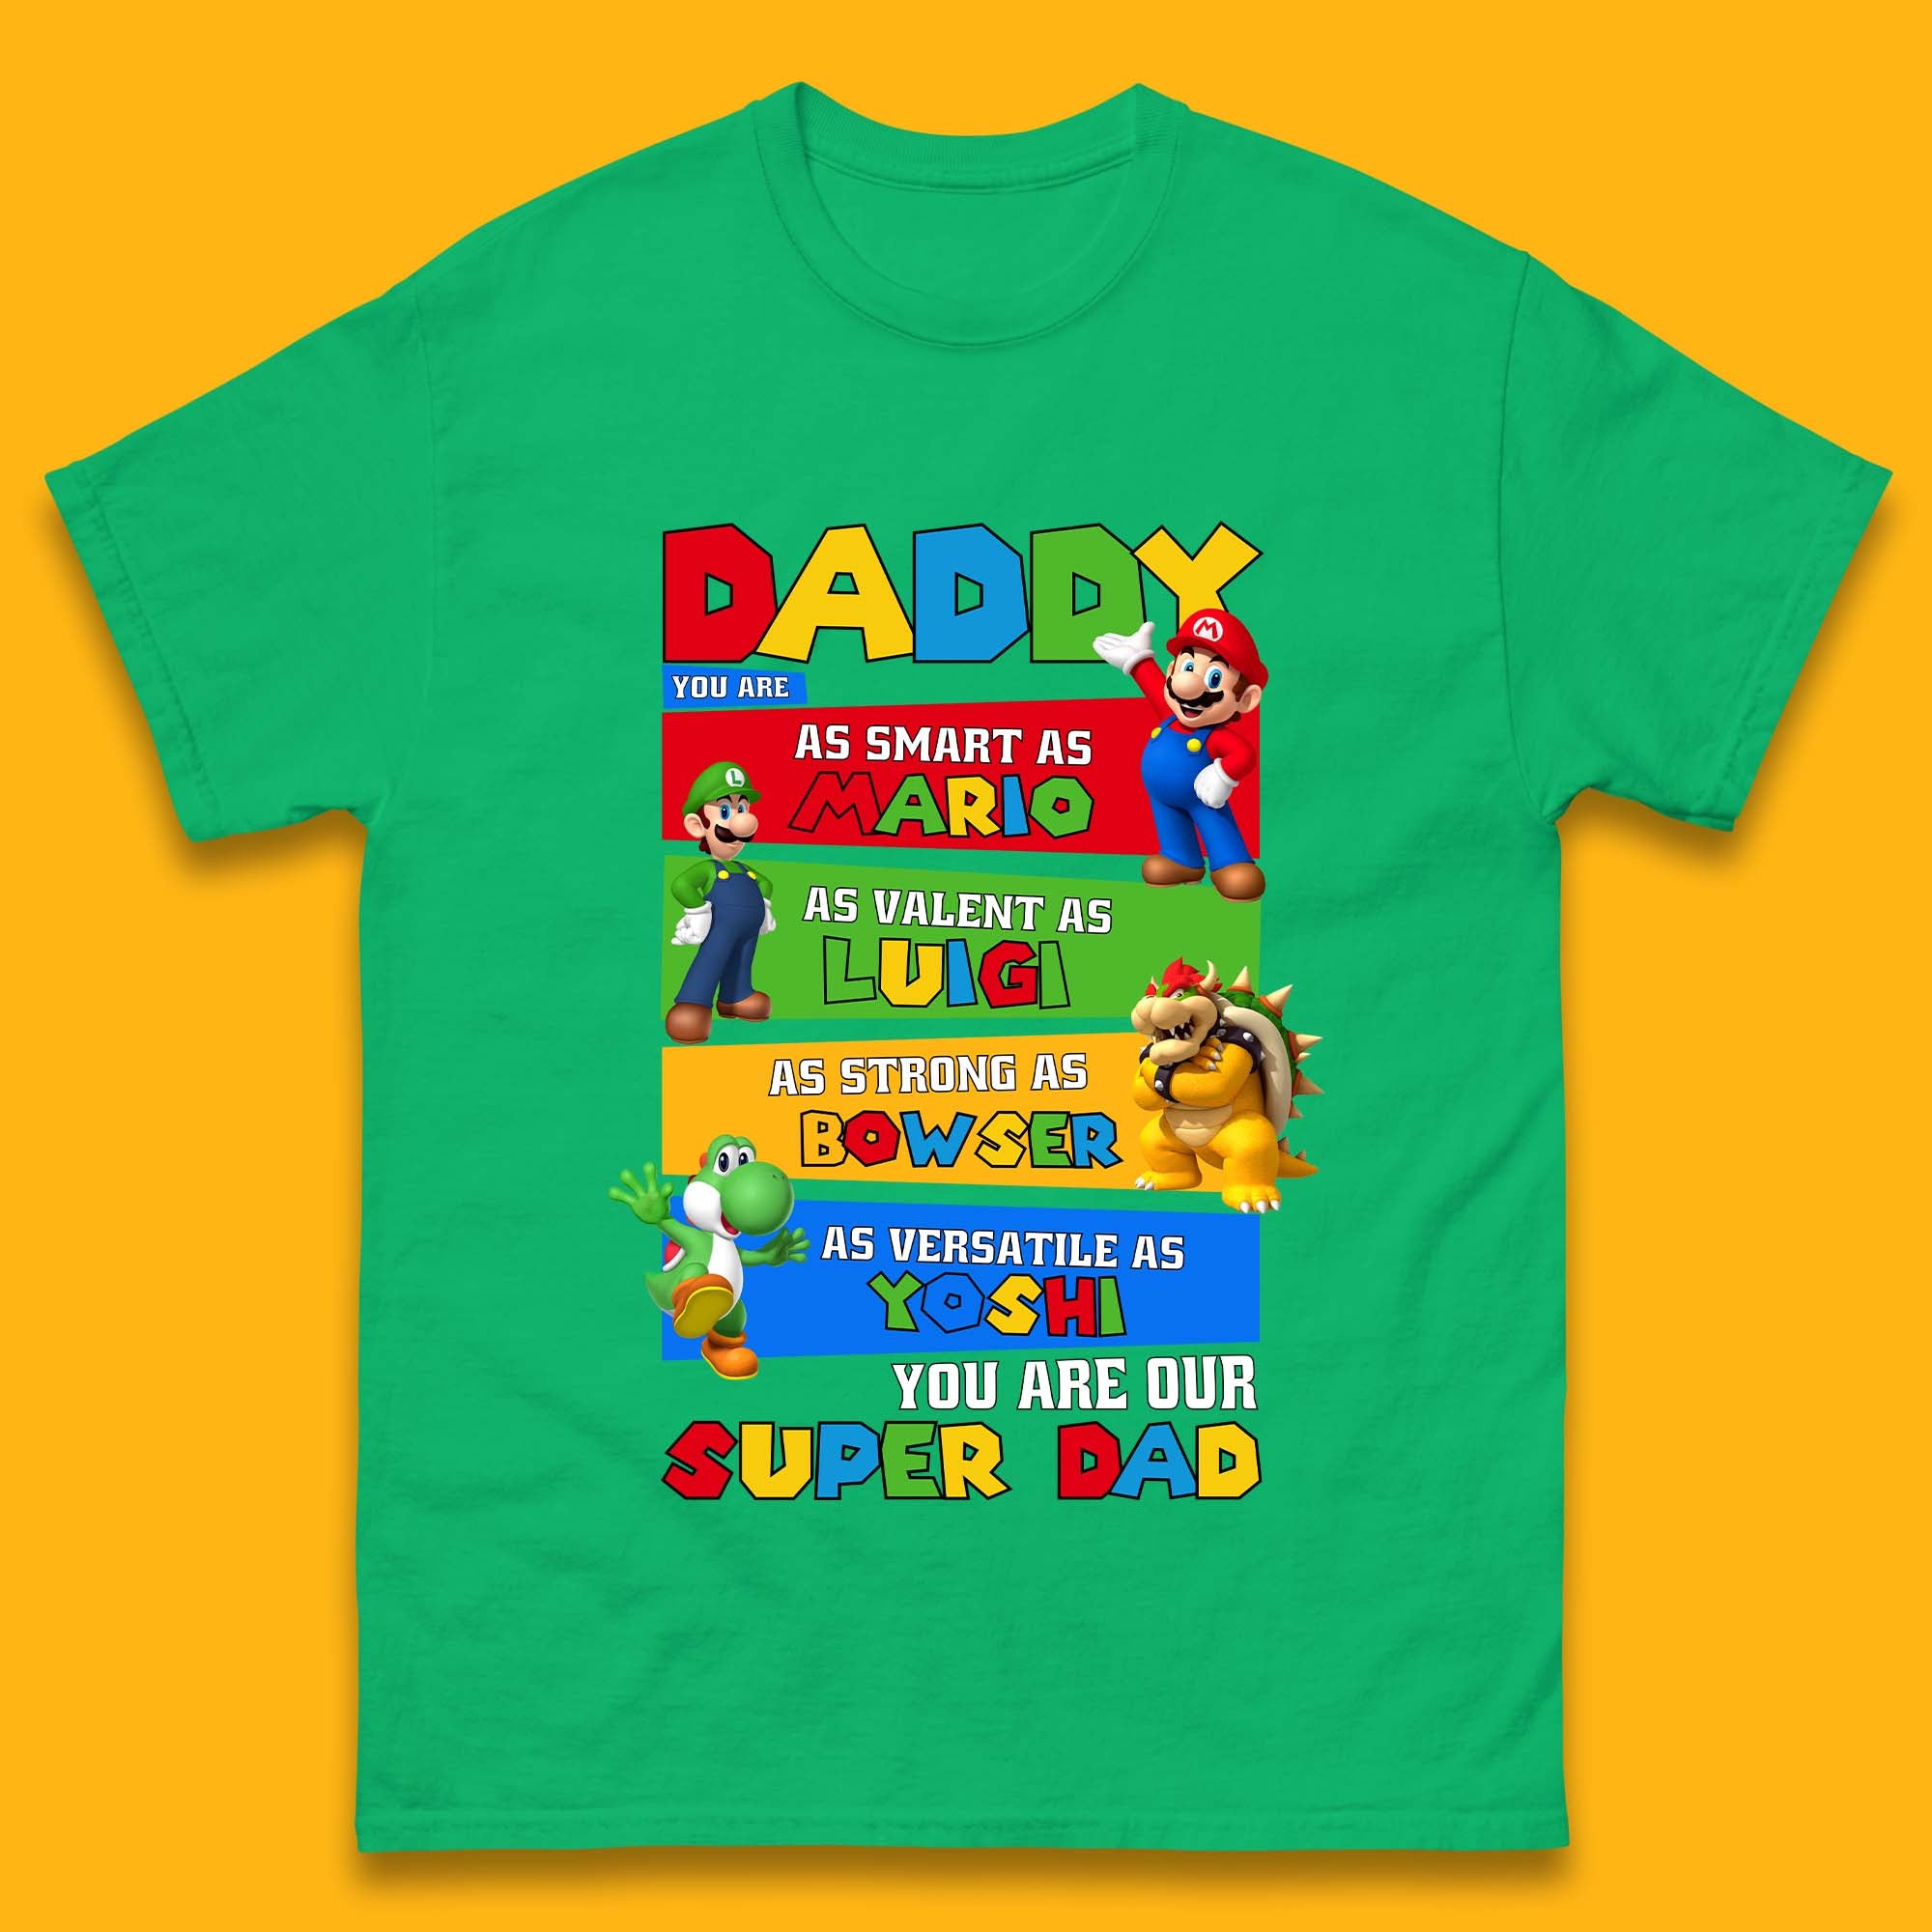 Super Dad Mens T-Shirt